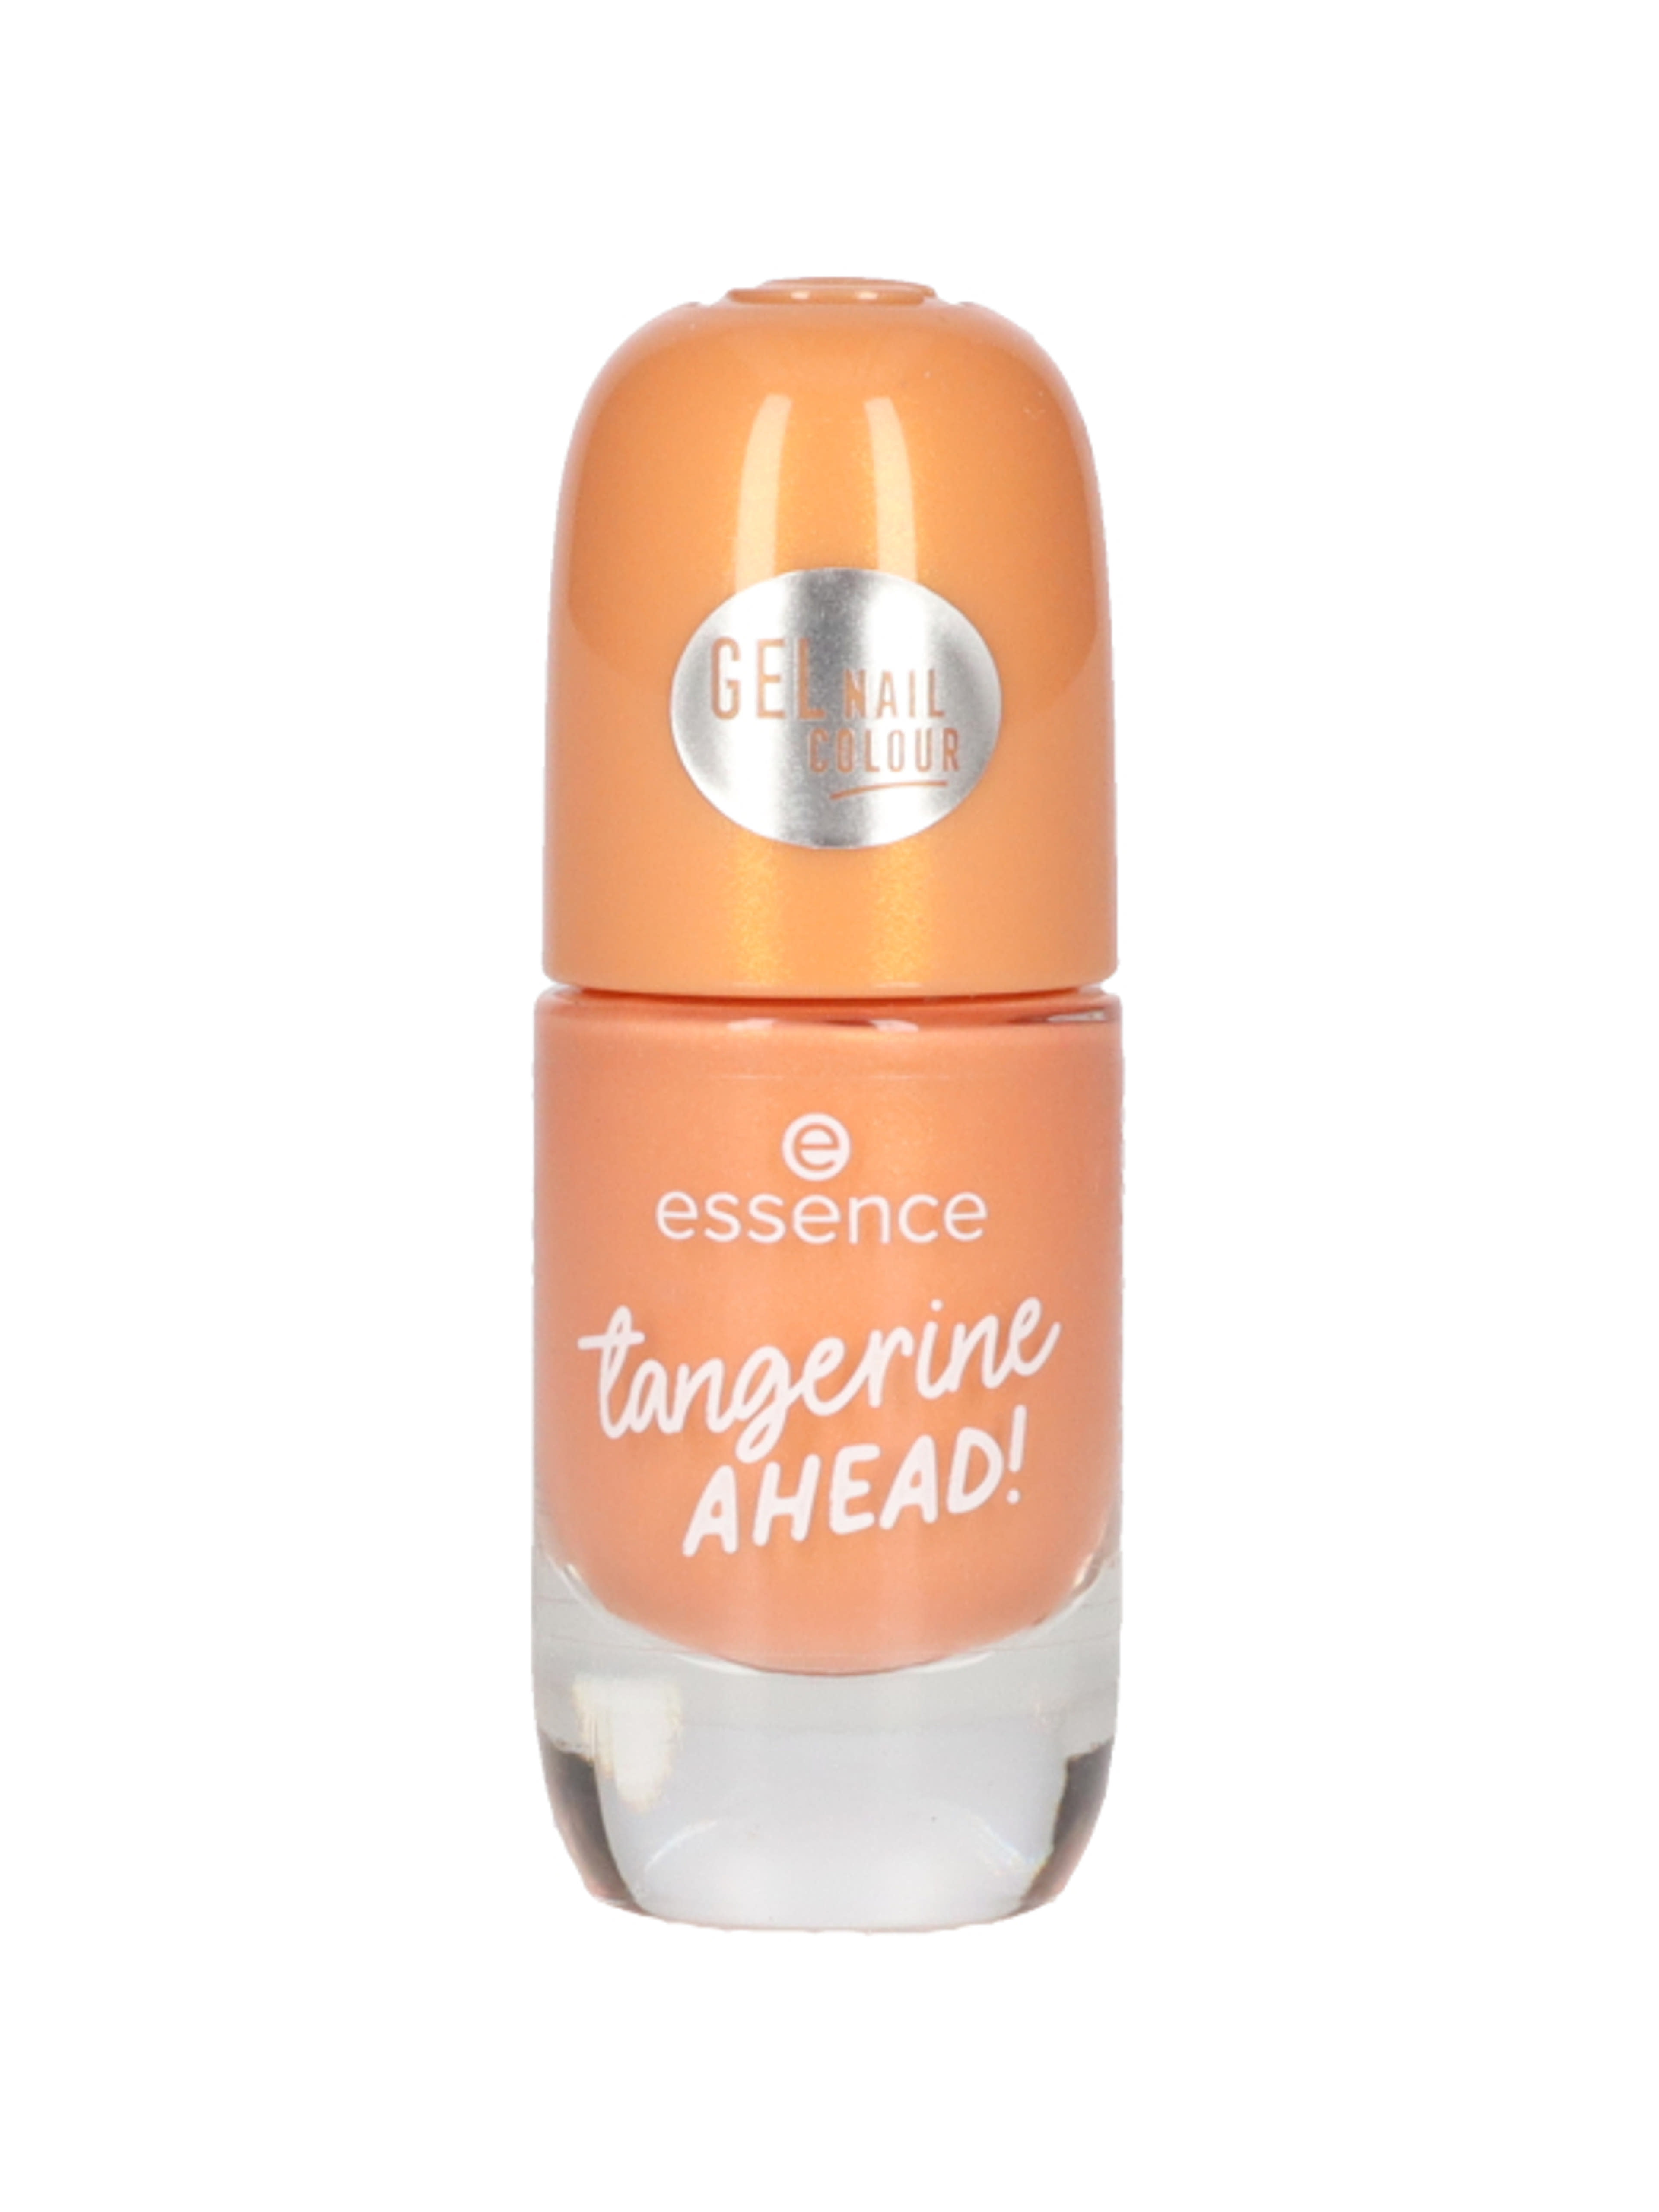 Essence Tangerine Ahead! gél lakk /23 - 1 db